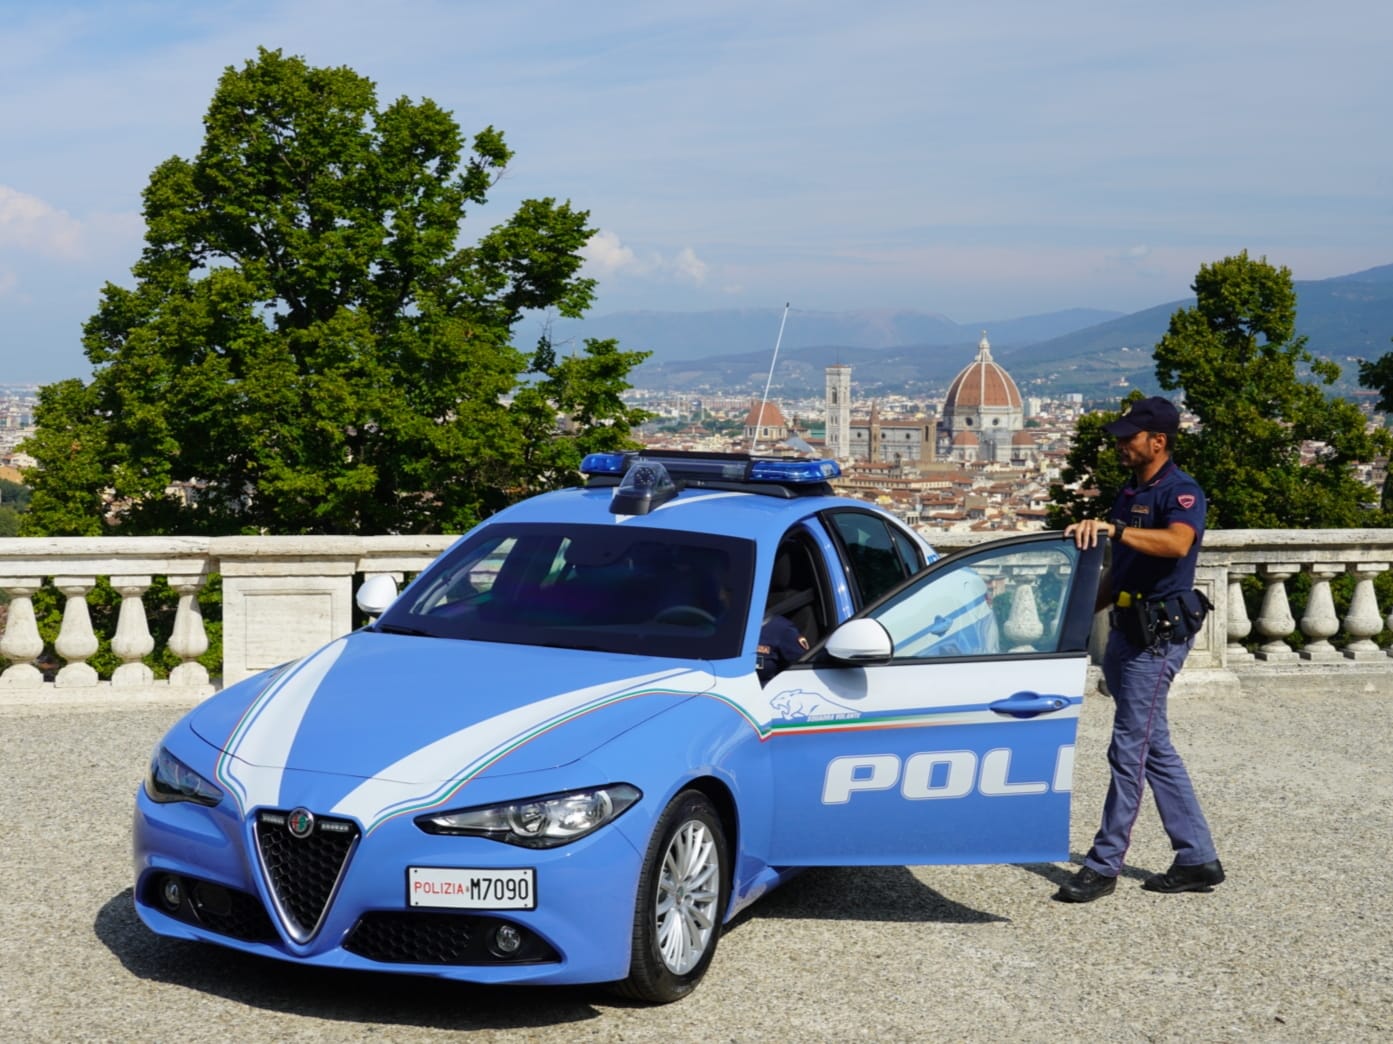 Polizia di Stato Firenze